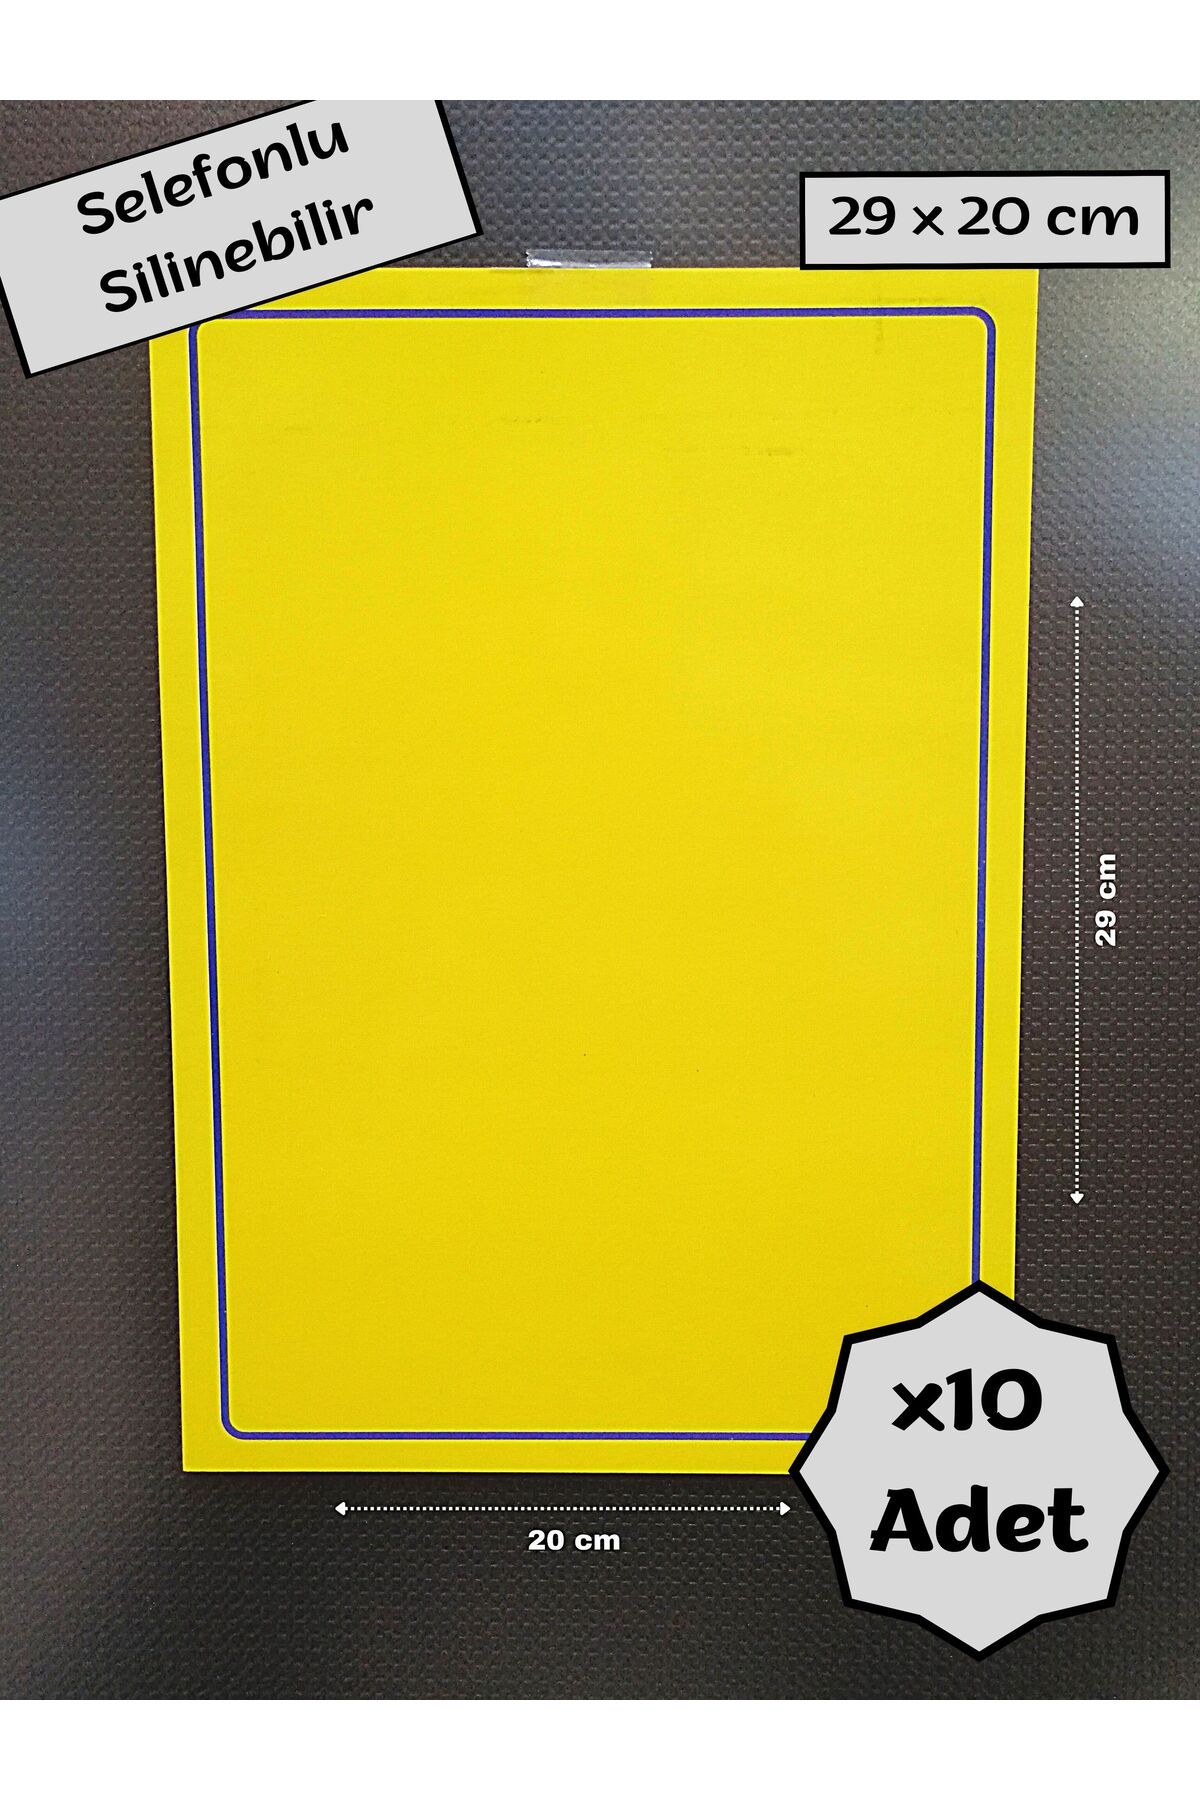 Özfiliz Mağaza Ekipmanları Selefonlu Silinebilir Sarı Etiket Kağıdı, Silinebilir Büyük İndirim Kağıdı Şok Fiyat Kağıdı Etiketi